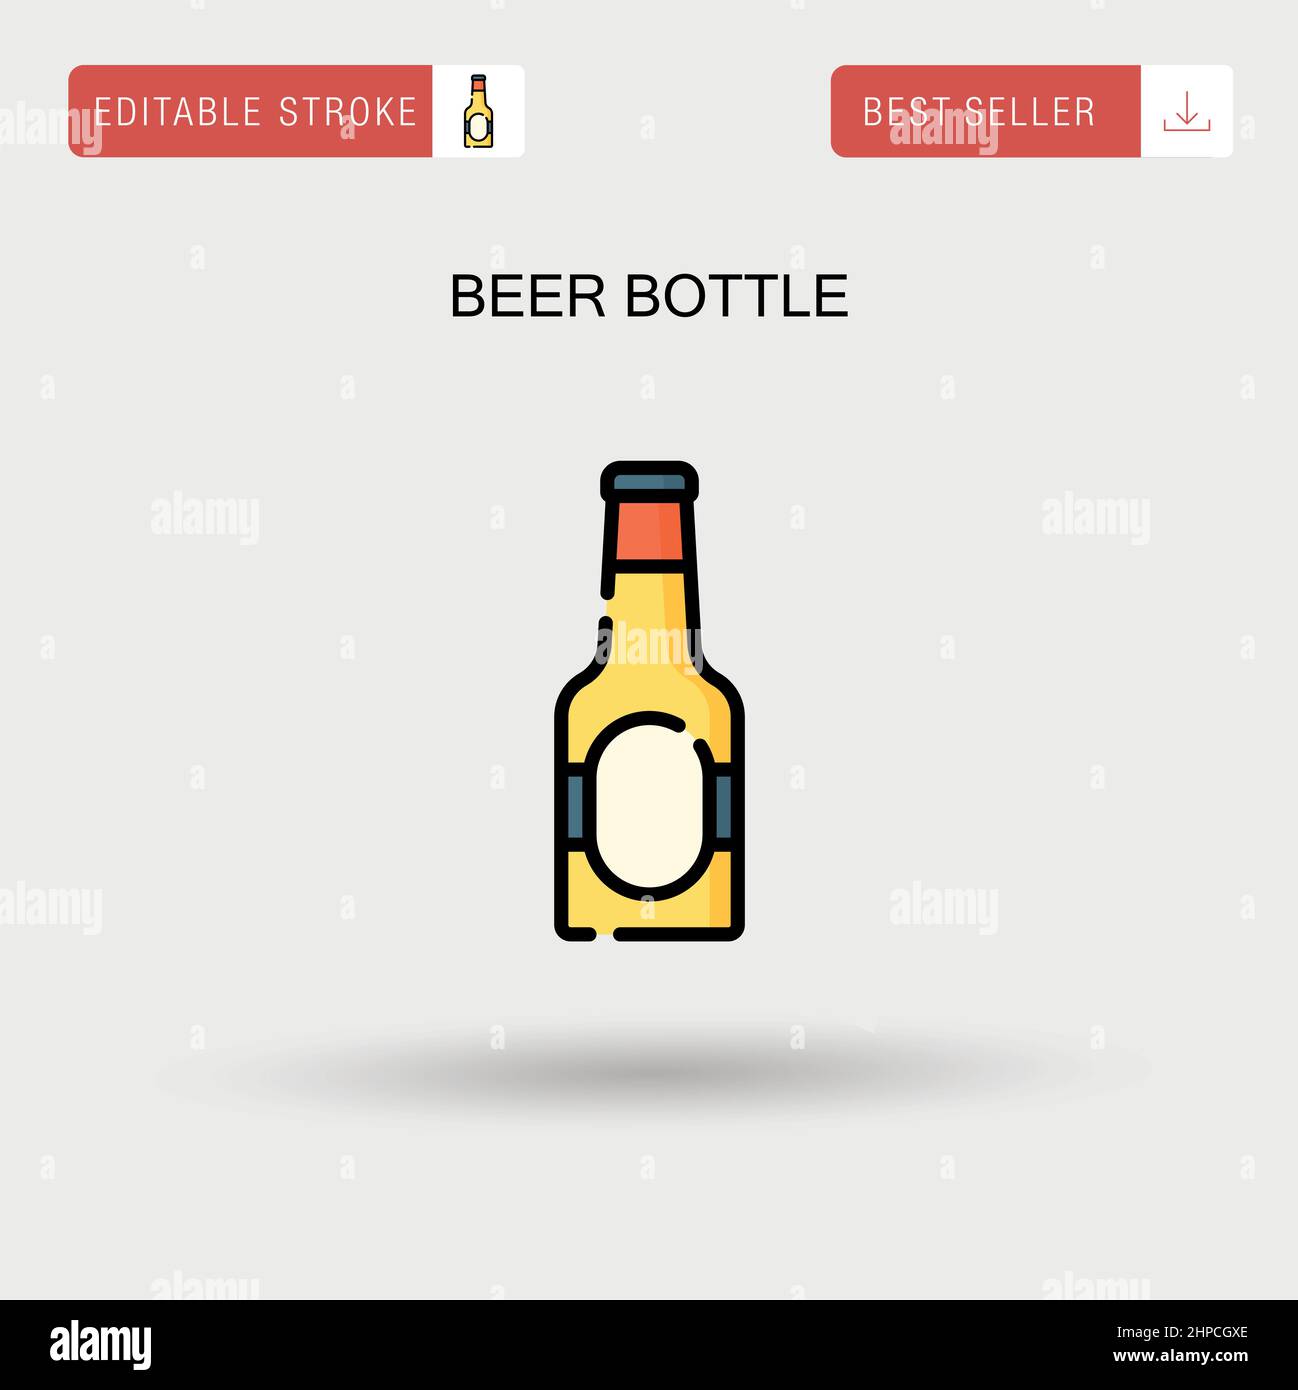 Einfaches Vektorsymbol für Bierflaschen. Stock Vektor